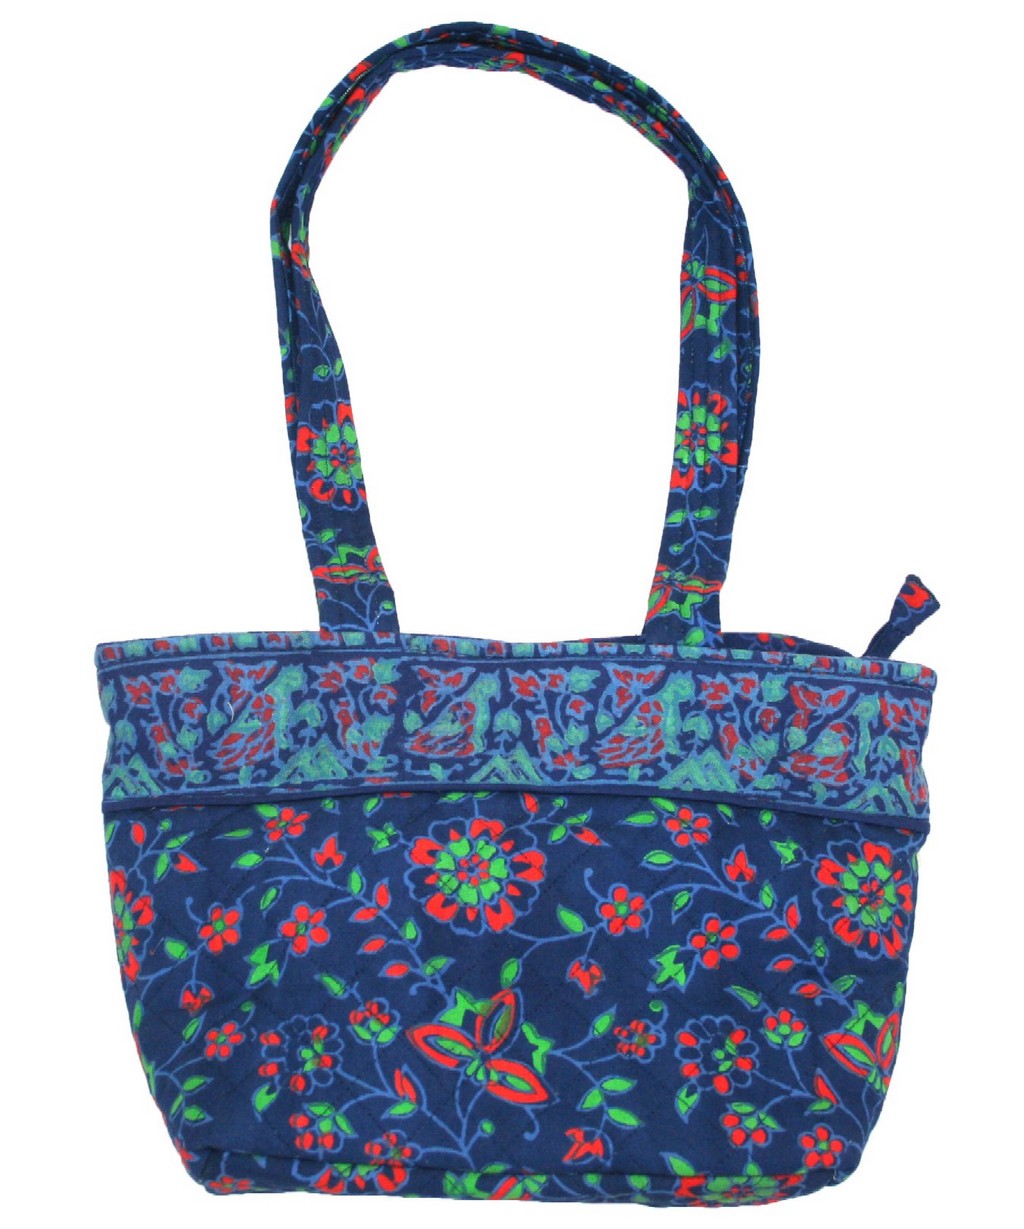 Handtasche aus gesteppter Napthol-Baumwolle mit Blockdruck, 13 x 9 